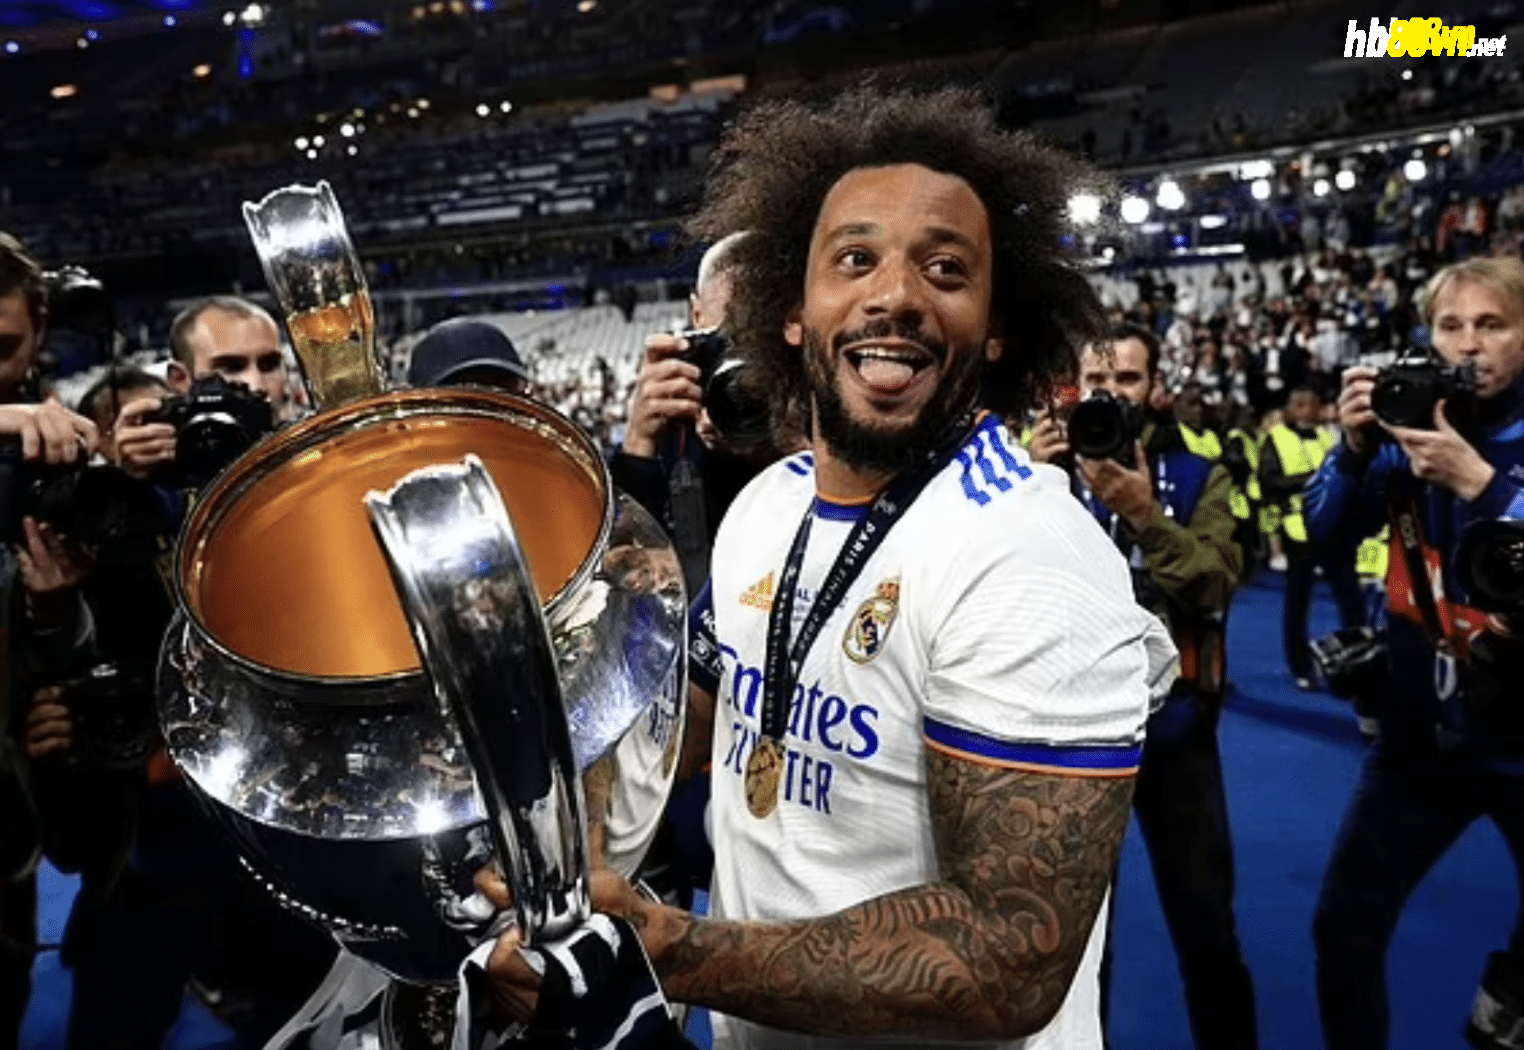 Marcelo từng là công thần của Real trong hành trình chinh phục những danh hiệu Champions League. Ảnh: Shutterstock